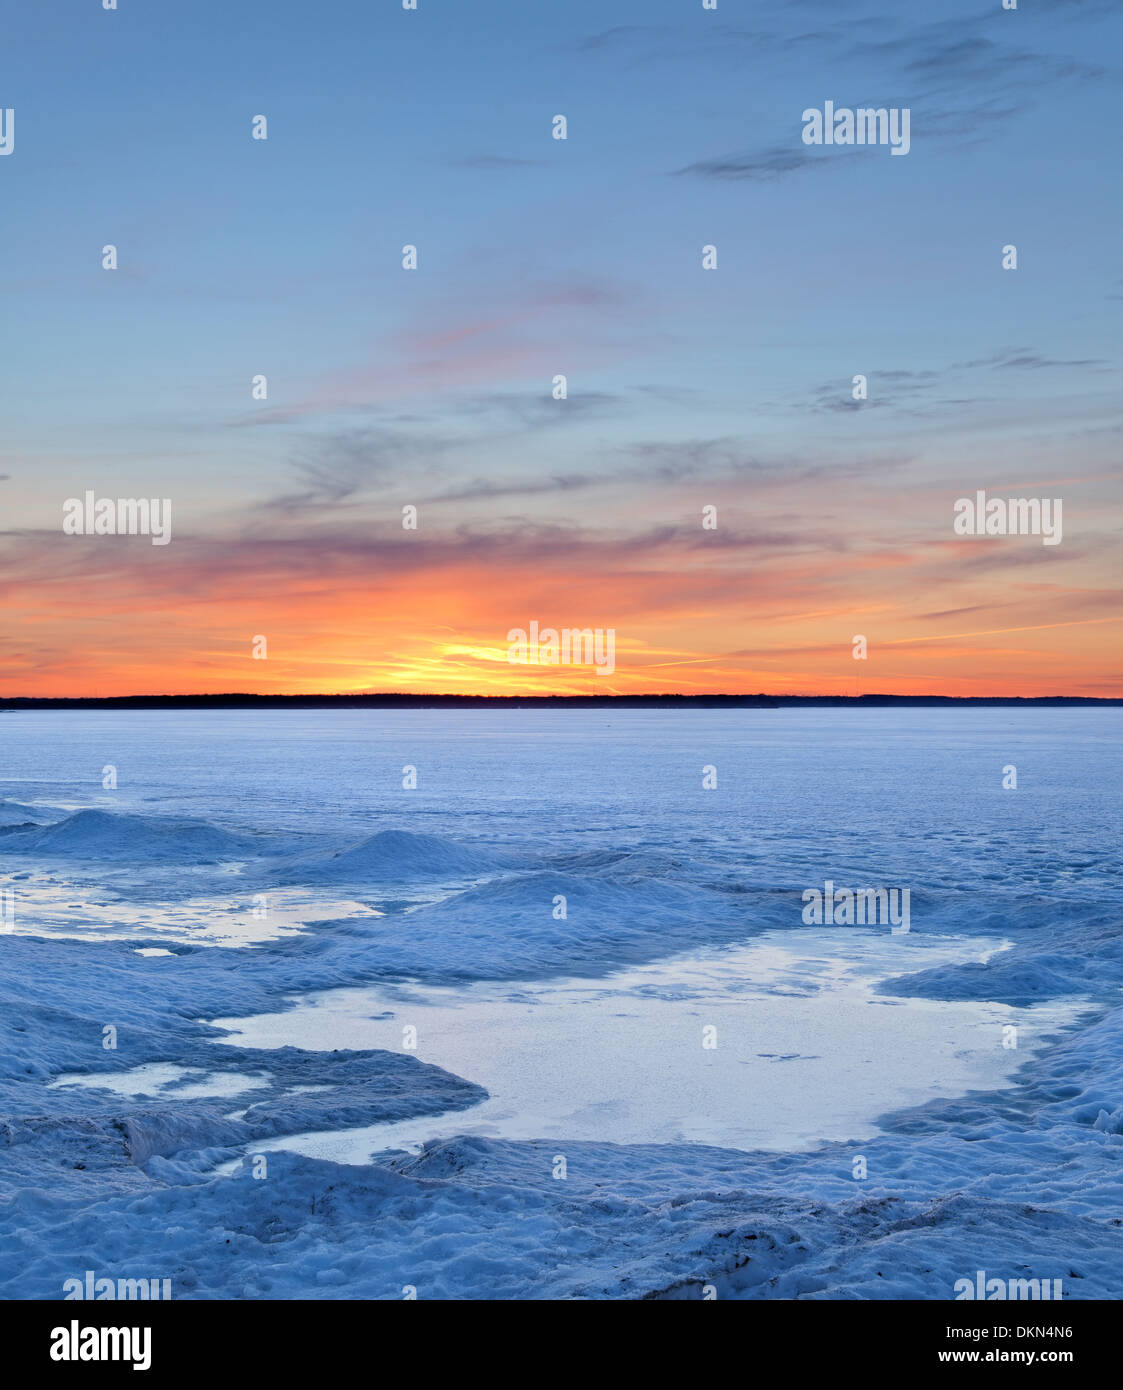 Pack de glace sur le lac Simcoe à mesure que la saison change lentement au cours de l'hiver au printemps. Georgina, Ontario, Canada. Banque D'Images